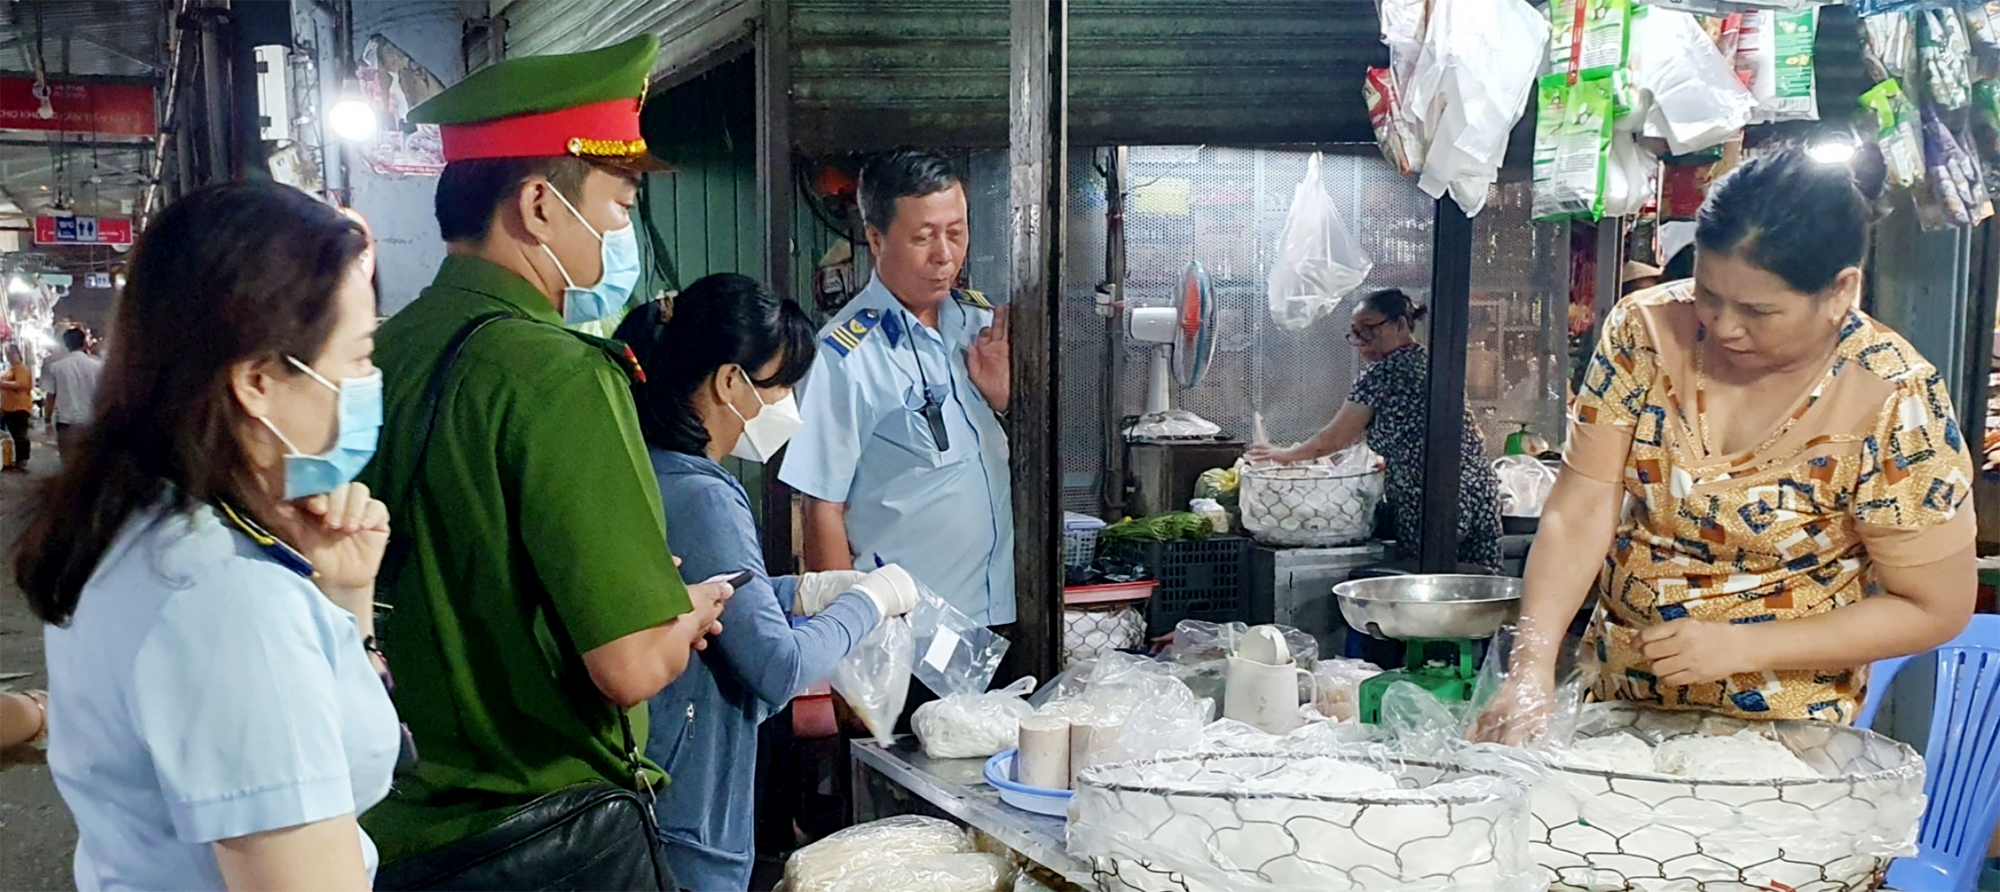 Đoàn kiểm tra liên ngành tỉnh lấy mẫu test nhanh với các chất cấm tại chợ Vũng Tàu.